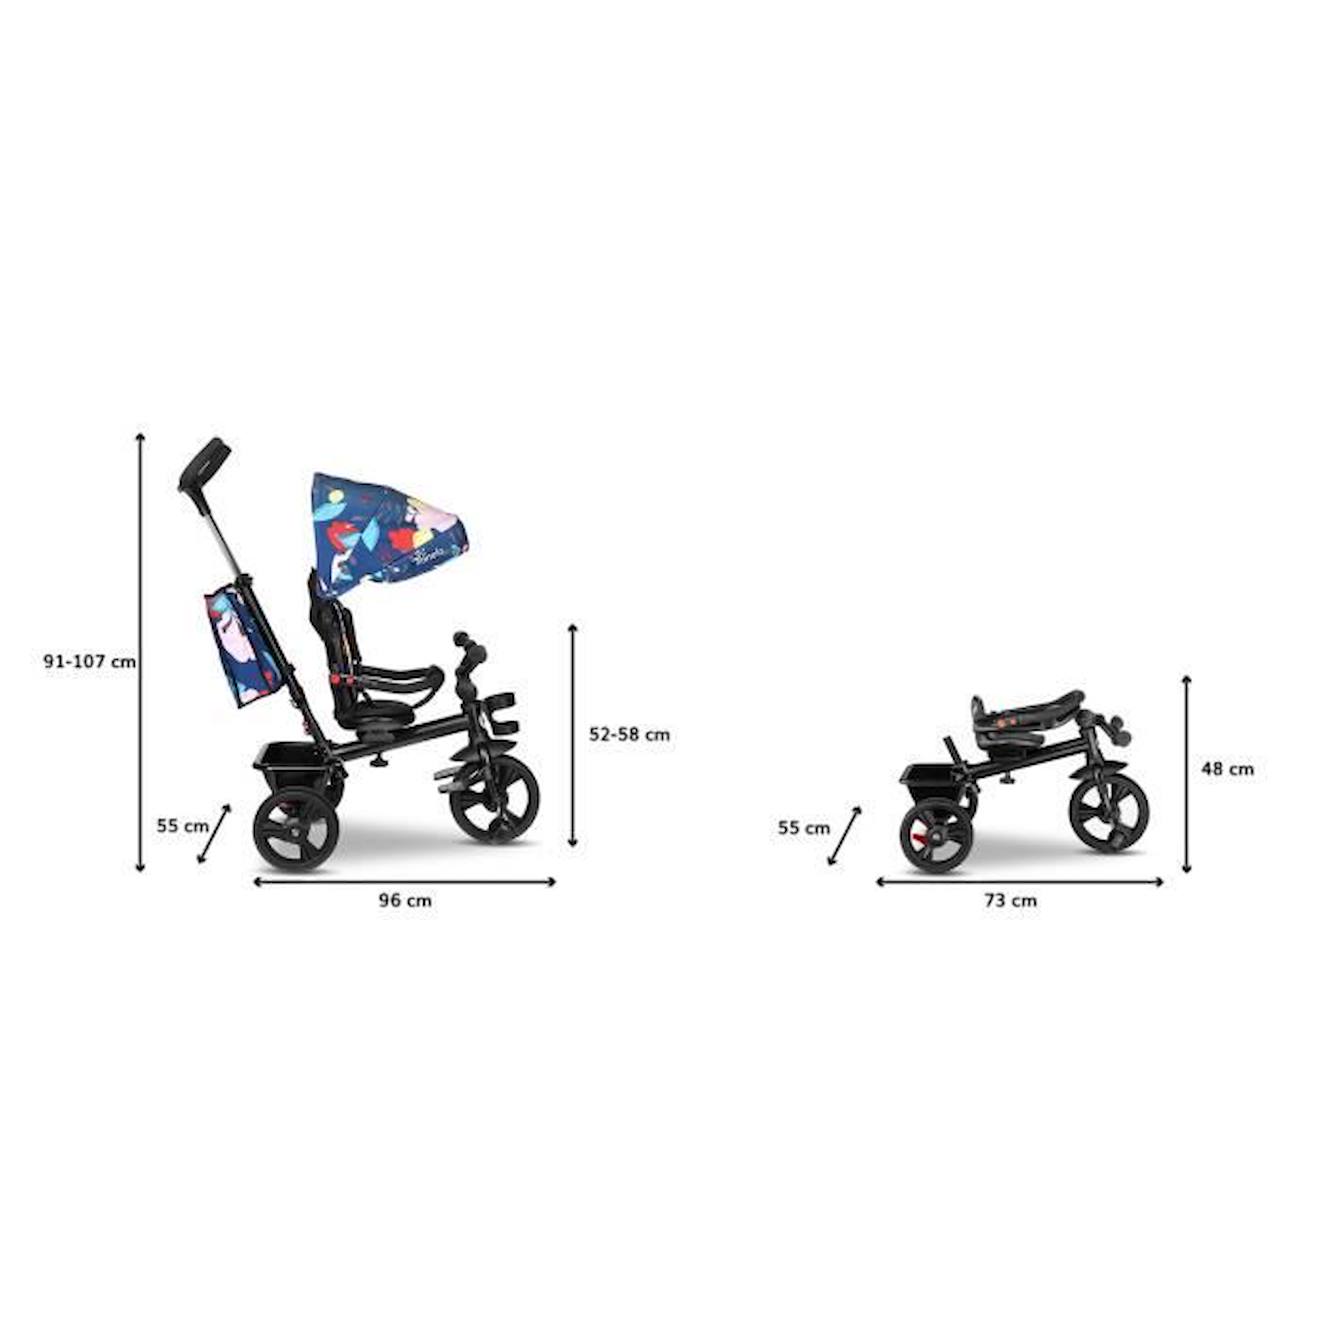 LIONELO Haari - Tricycle bébé évolutif - Jusqu'à 25 Kg - Siège réversible -  Grand Panier Sac - Porte-gobelet - Roue Libre - Limited